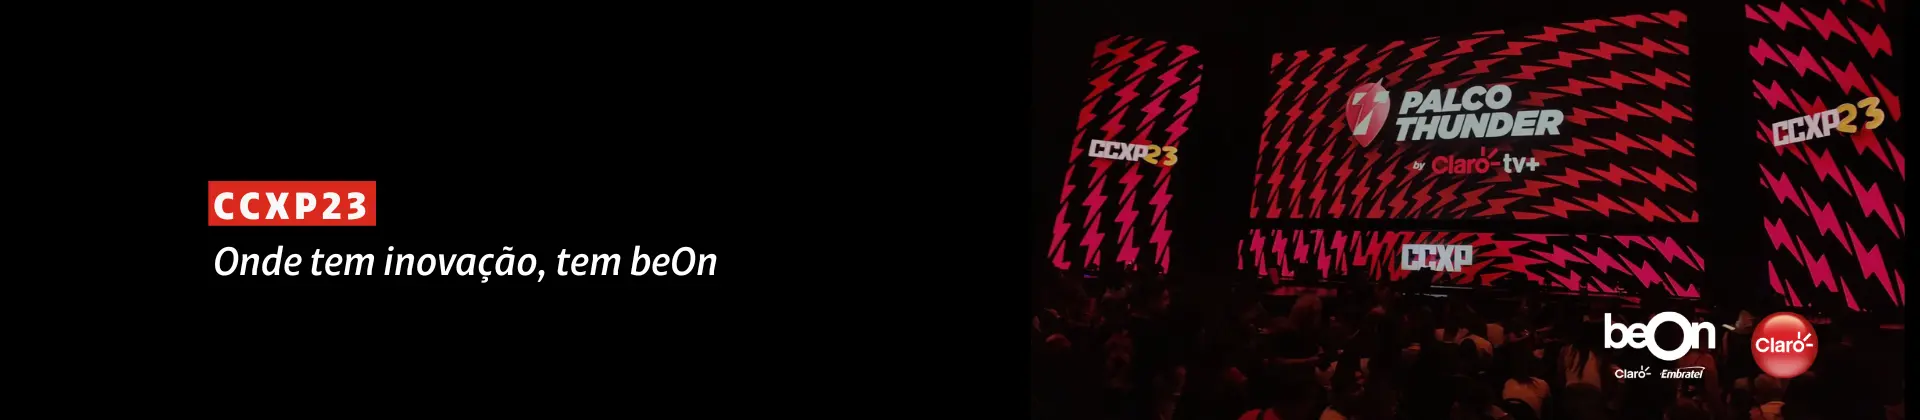 Imagem do telão do palco Thunder do evento CCXP, o telão está vermelho e preto e tem o logo da Claro